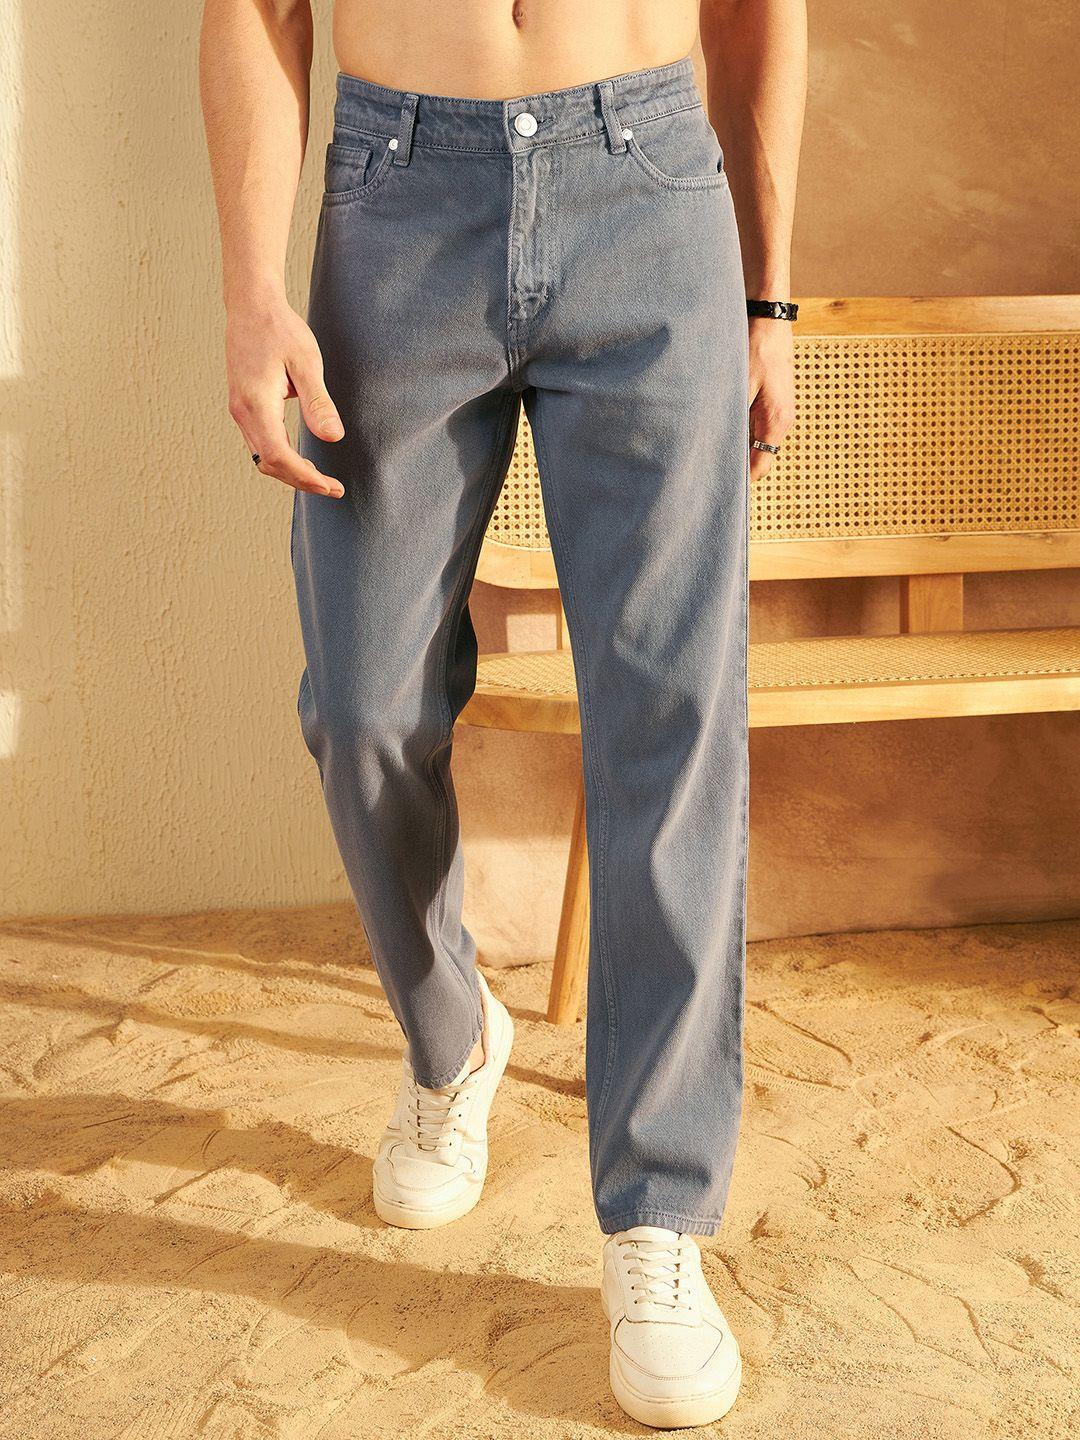 dennison men comfort baggy fit non stretchable cotton jeans